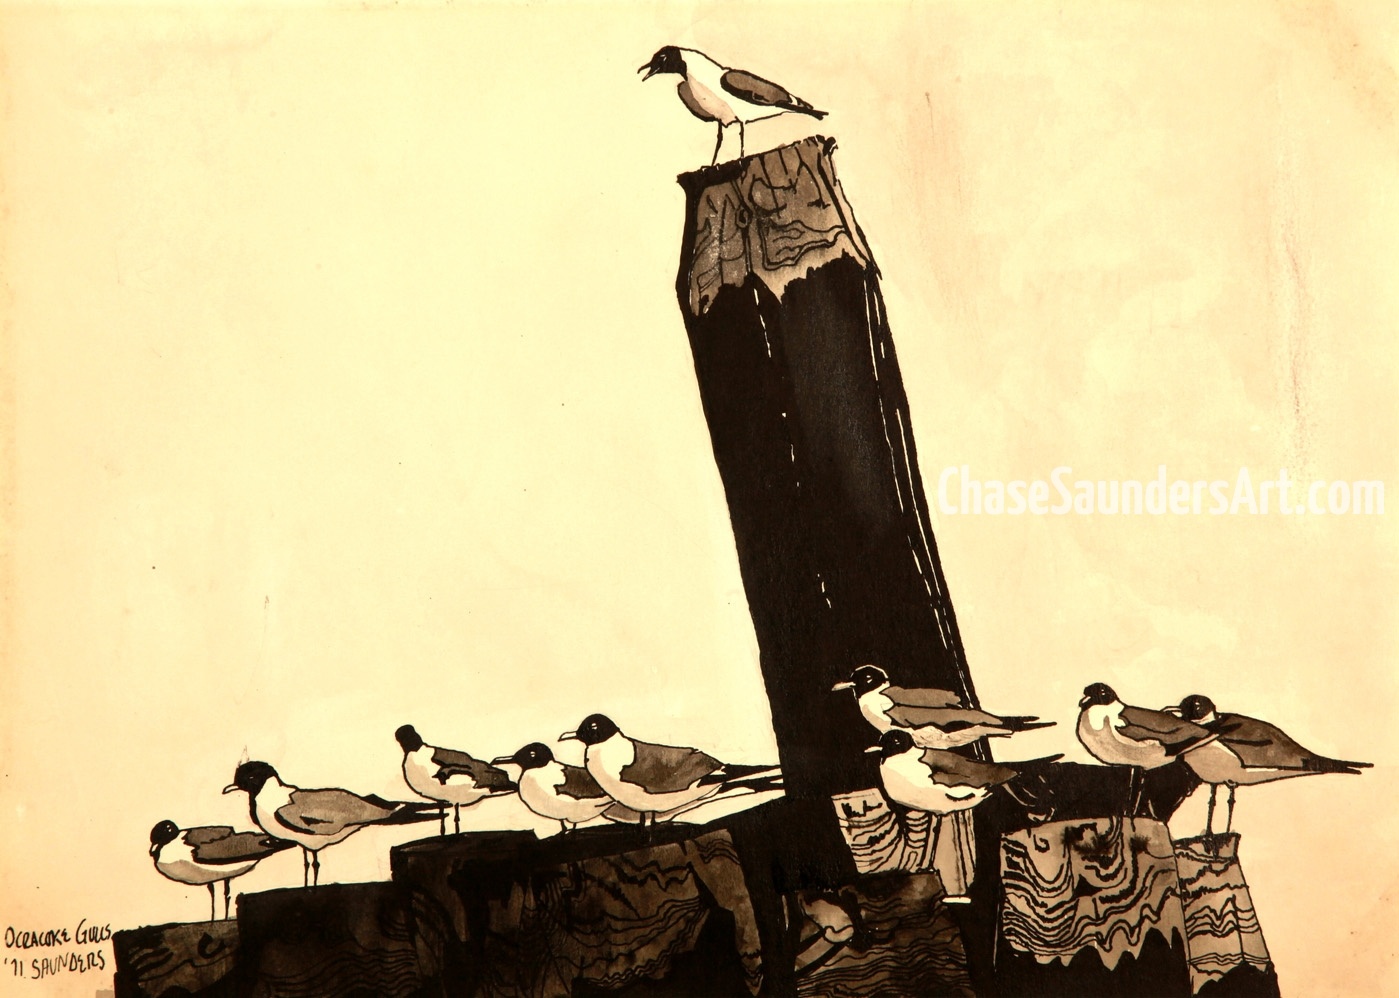 Ocracoke Gulls